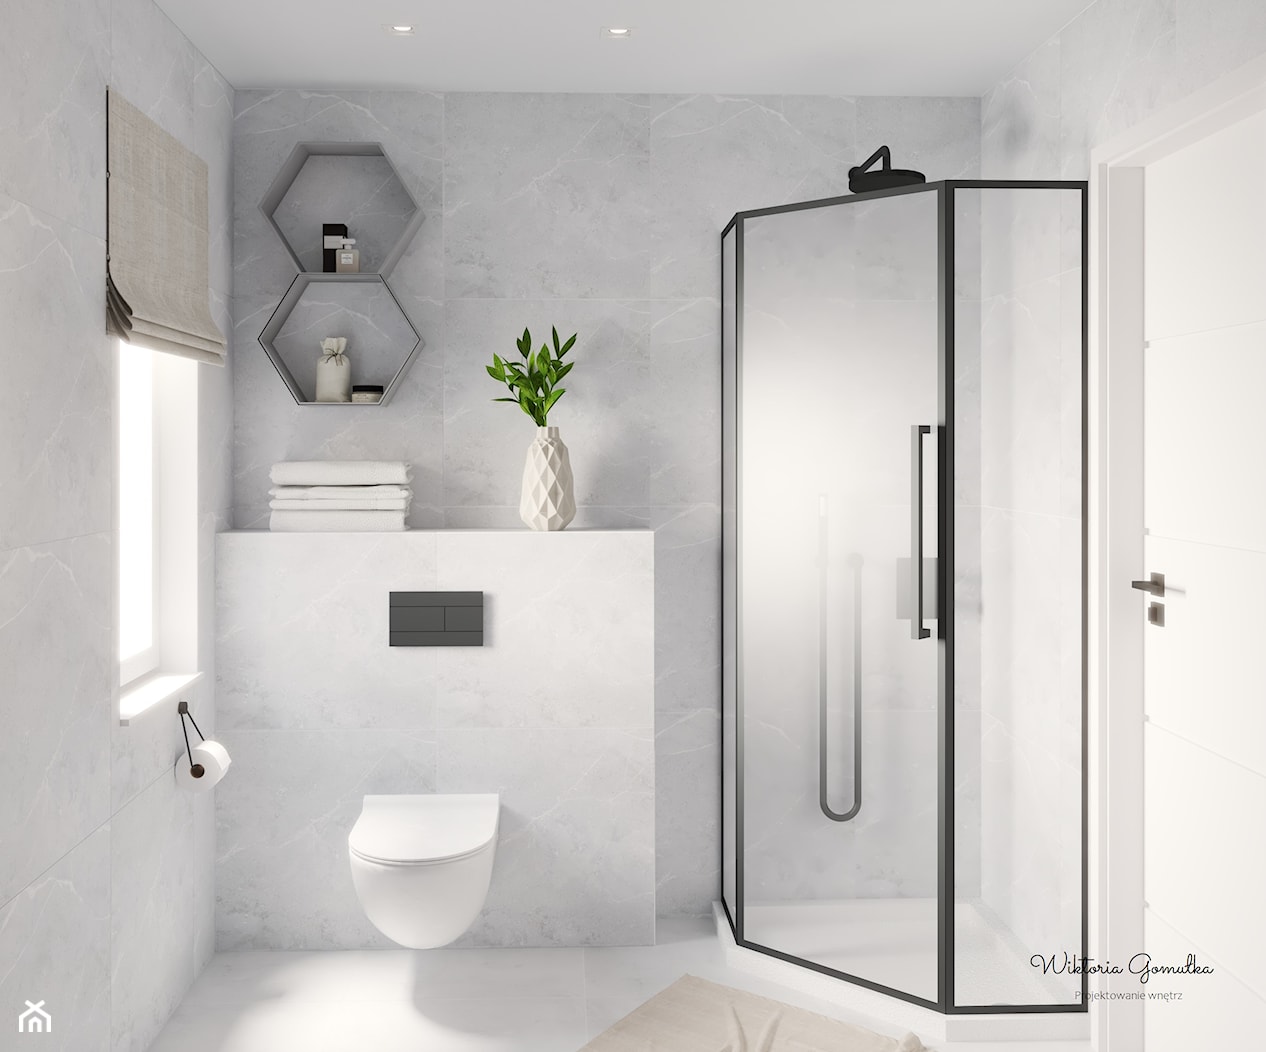 Mała jasna łazienka - zdjęcie od gomulkadesign - Homebook